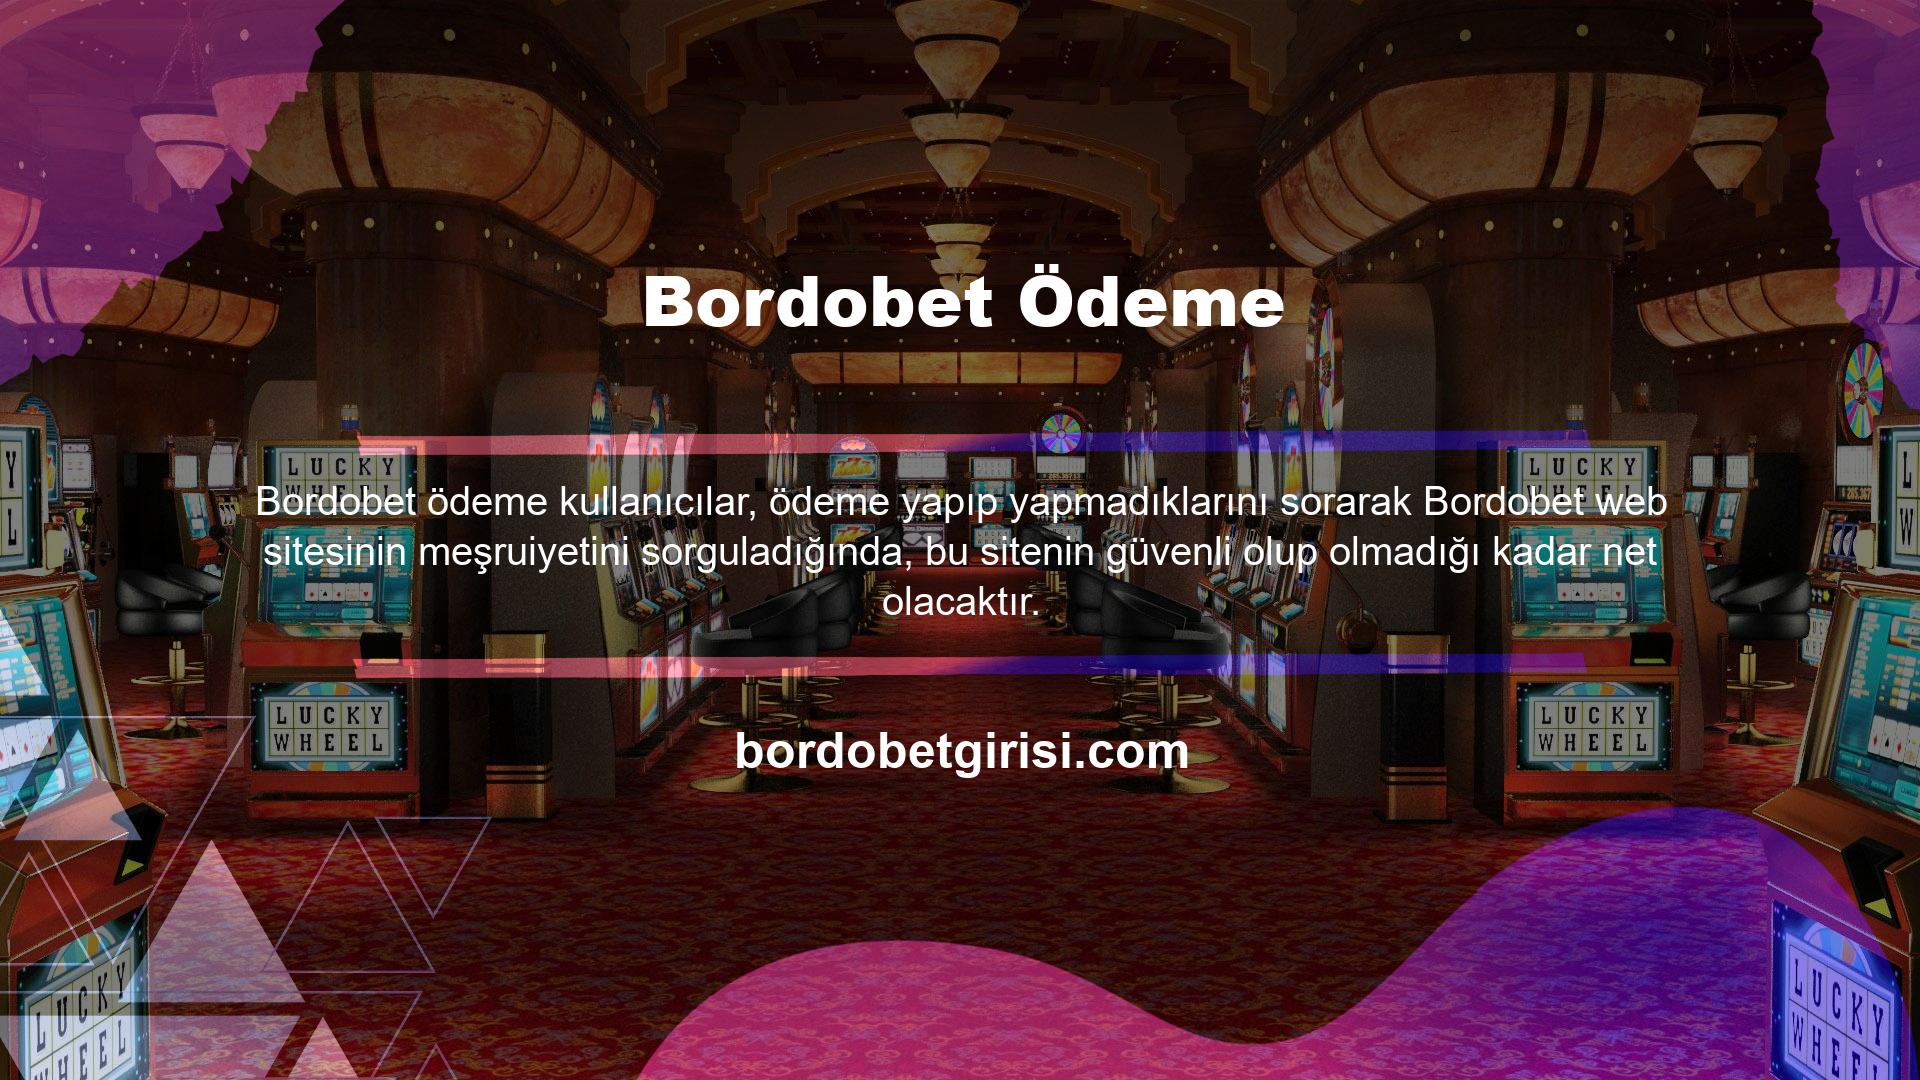 Bordobet, hem mevcut hem de potansiyel kullanıcılara güvenli bir oyun deneyimi garanti eden siteler arasında yer alıyor